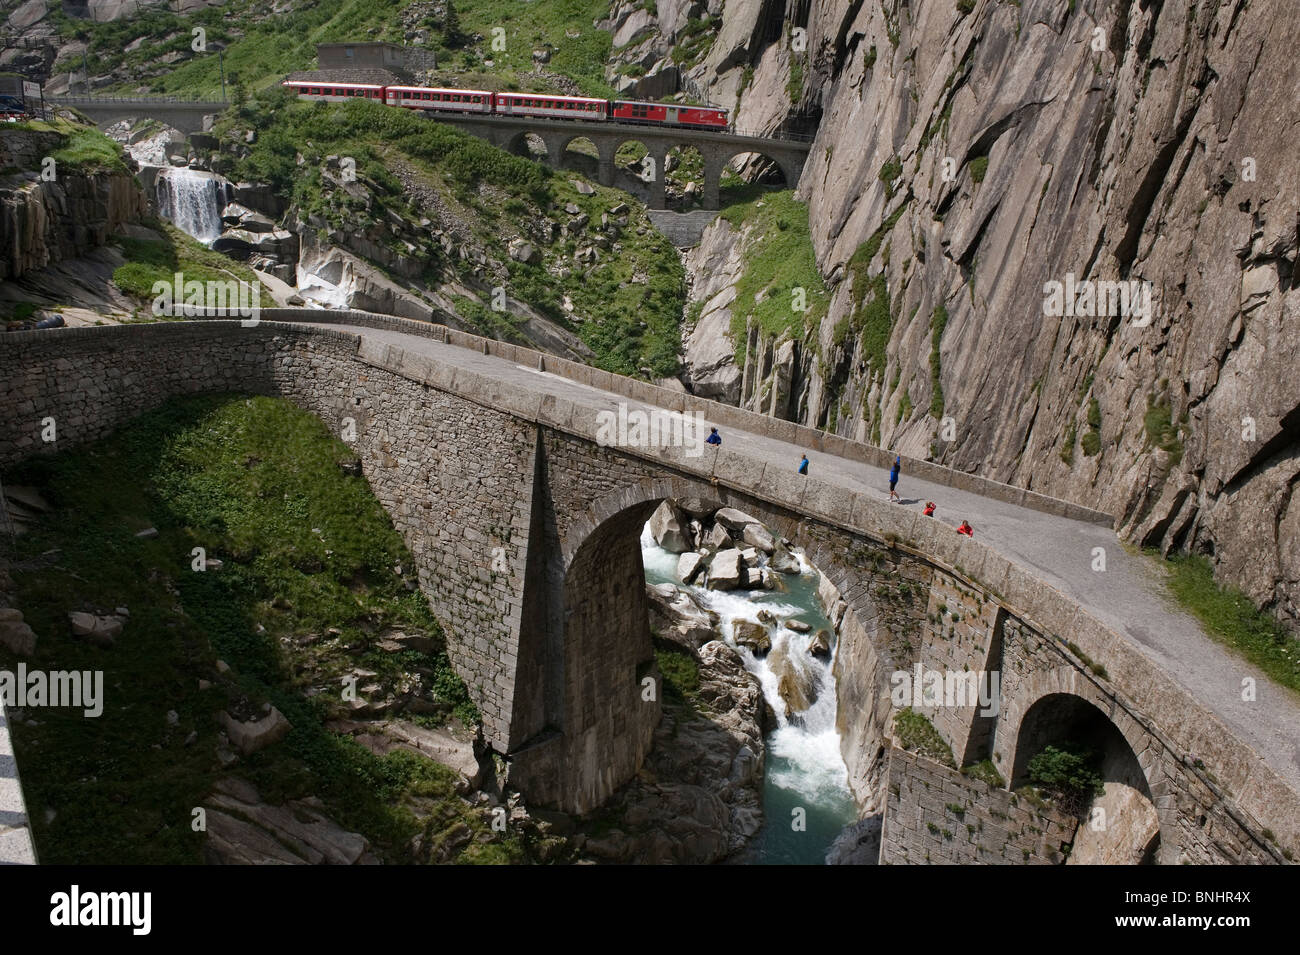 La Suisse. Voyage en Train en Suisse. Le Matterhorn-Gotthard bahn train passe au-dessus du Pont du Diable, le Teufelsbr Banque D'Images